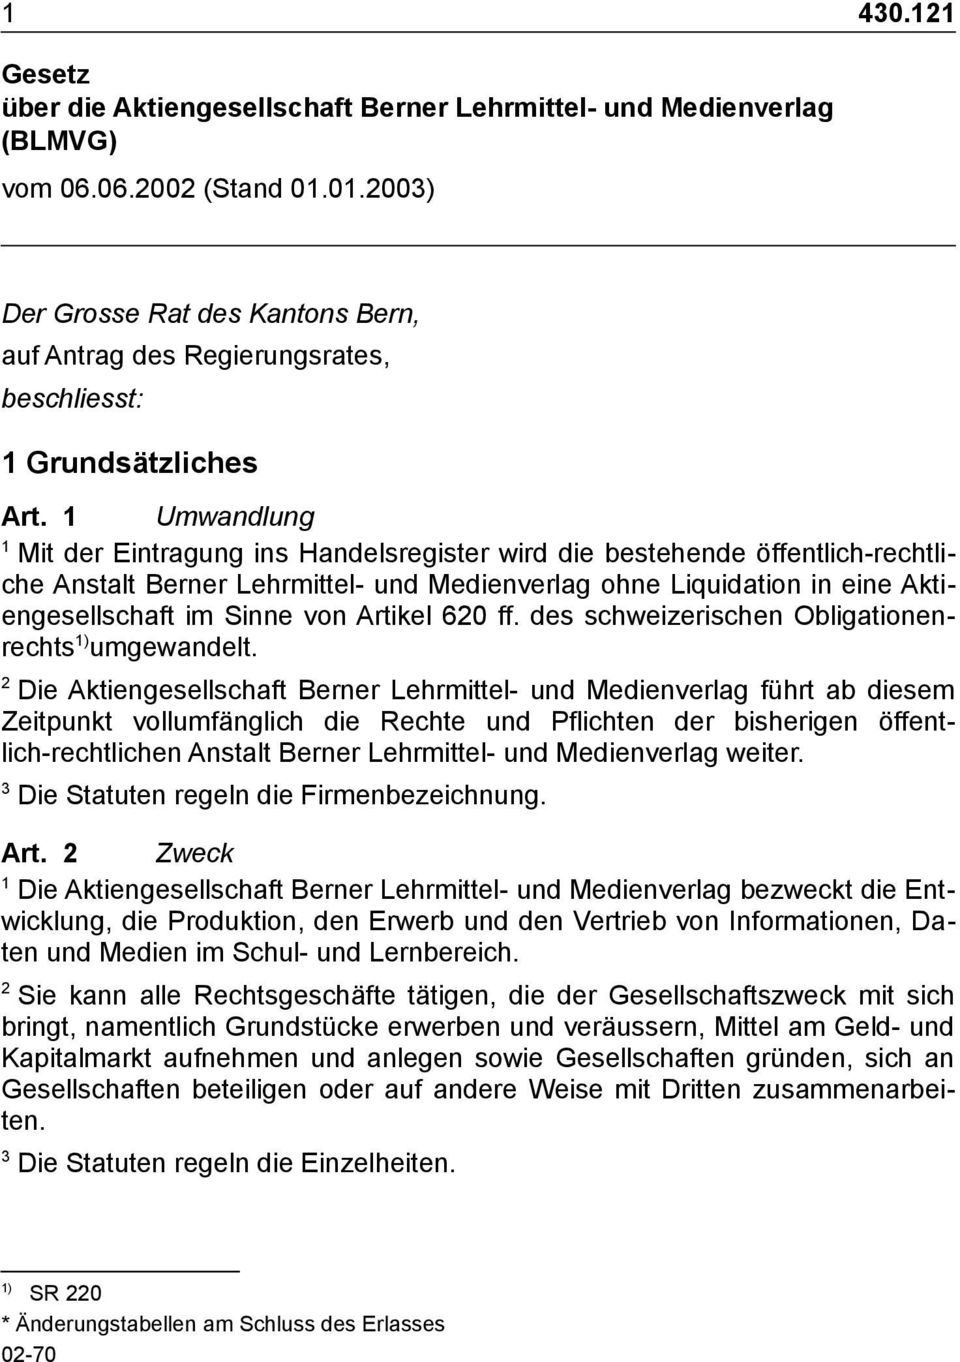 Artikel 60 ff. des schweizerischen Obligationenrechts ) umgewandelt.